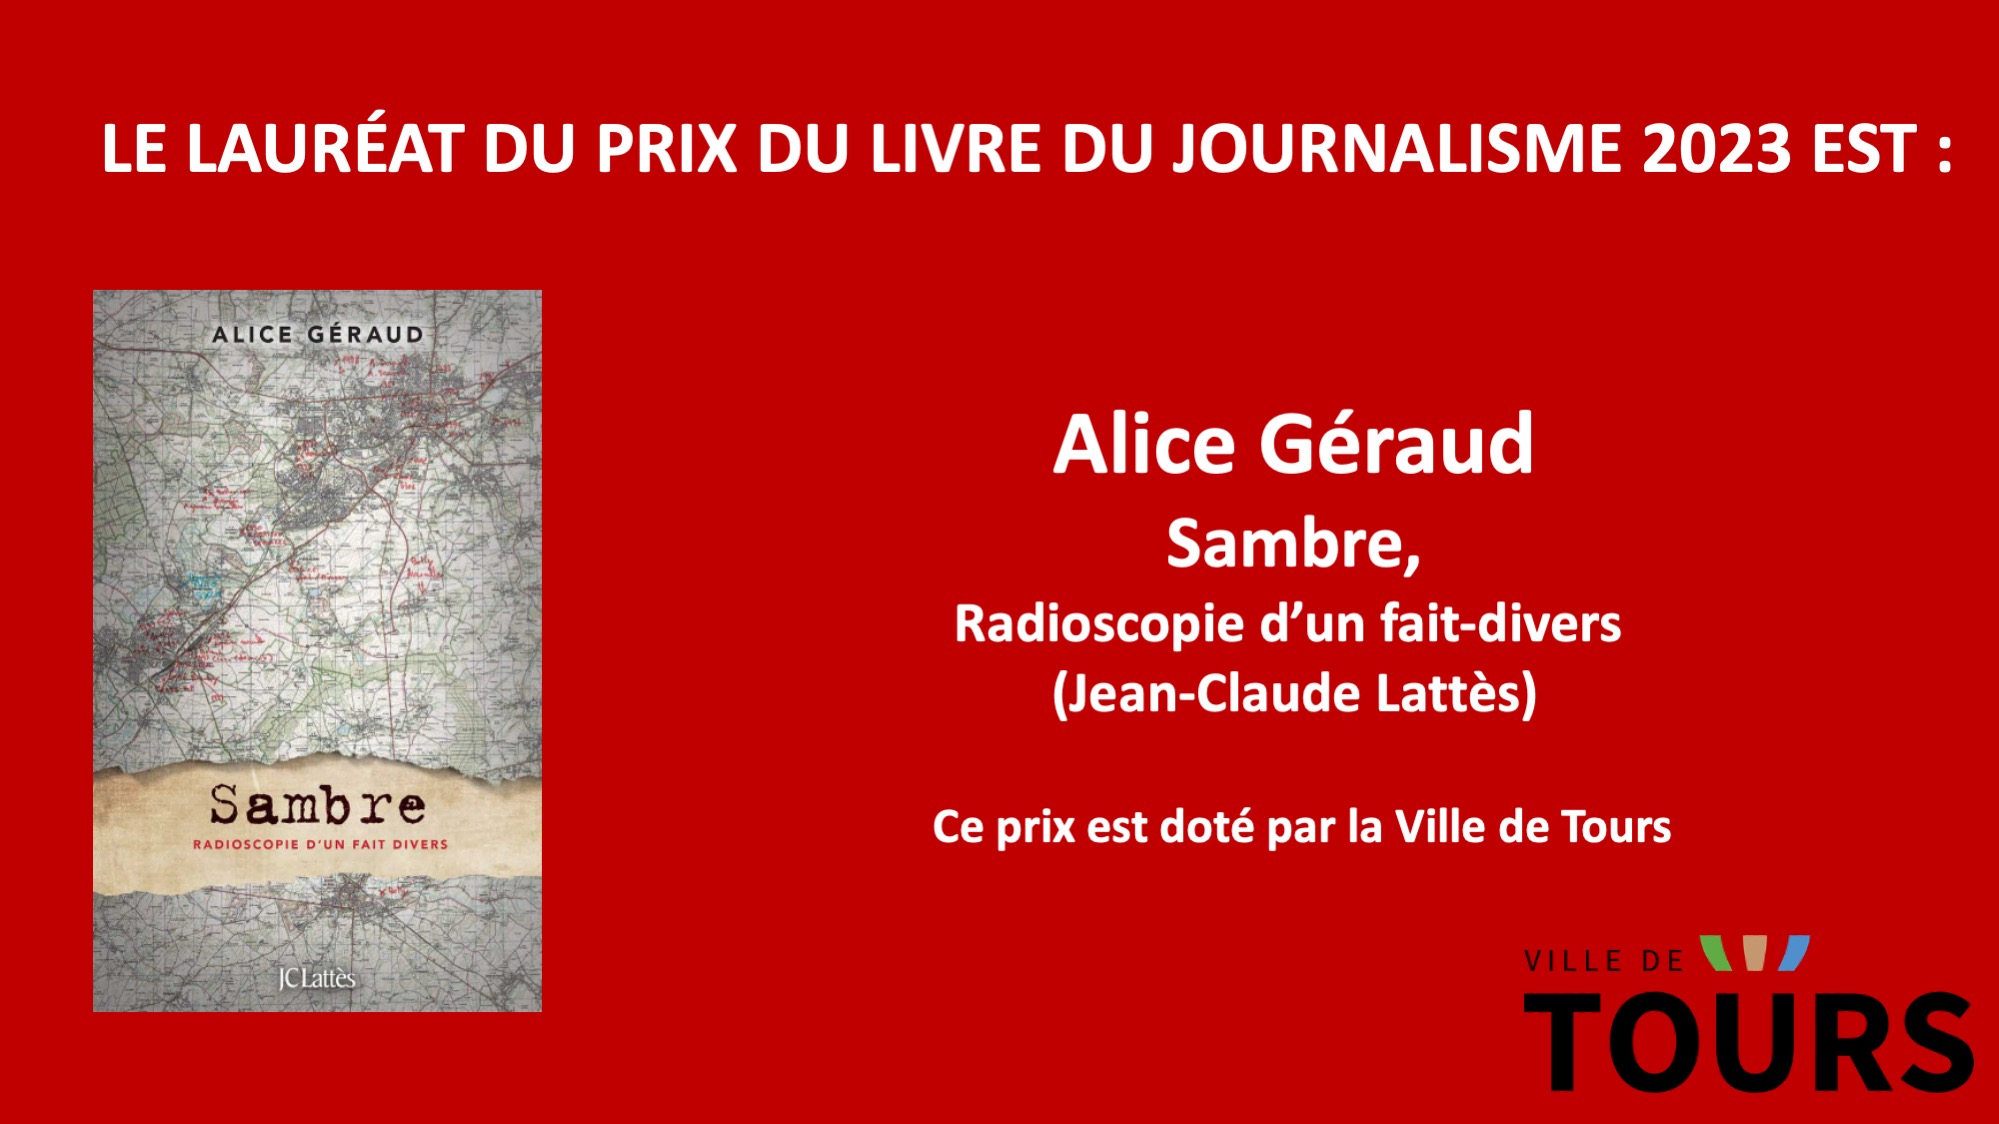 Assises du Journalisme on X: 🏆 Bravo à @GeraudAlice , lauréate du prix du  livre du journalisme 2023 des Assises pour Sambre, radioscopie d'un fait- divers @editionsLattes #AJtours  / X